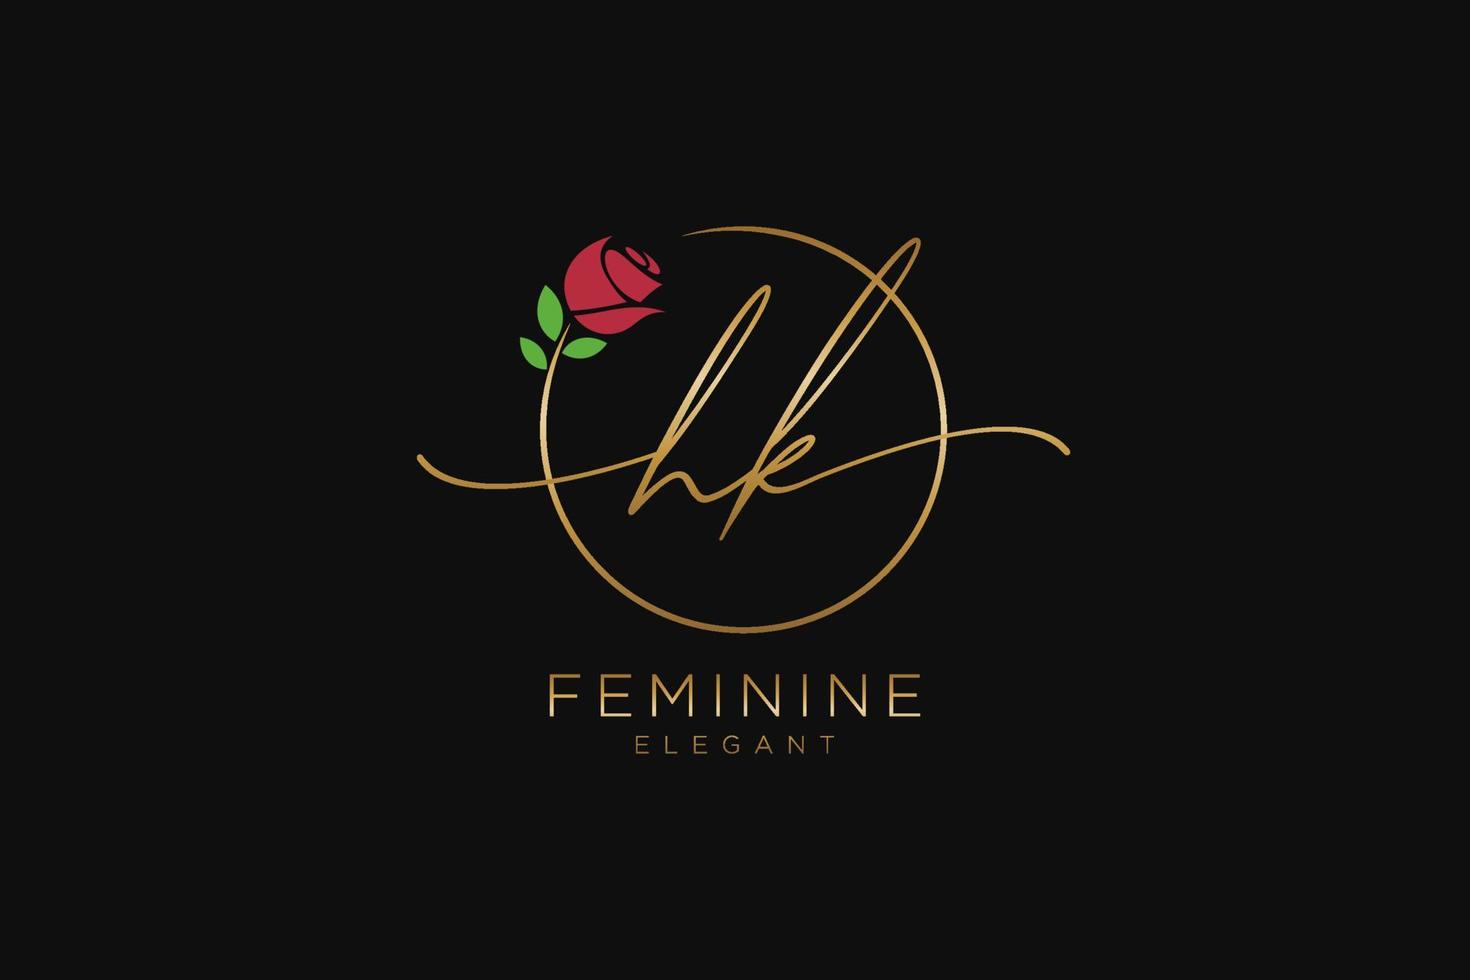 monogramme de beauté du logo féminin initial hk et création de logo élégante, logo manuscrit de la signature initiale, mariage, mode, floral et botanique avec modèle créatif. vecteur